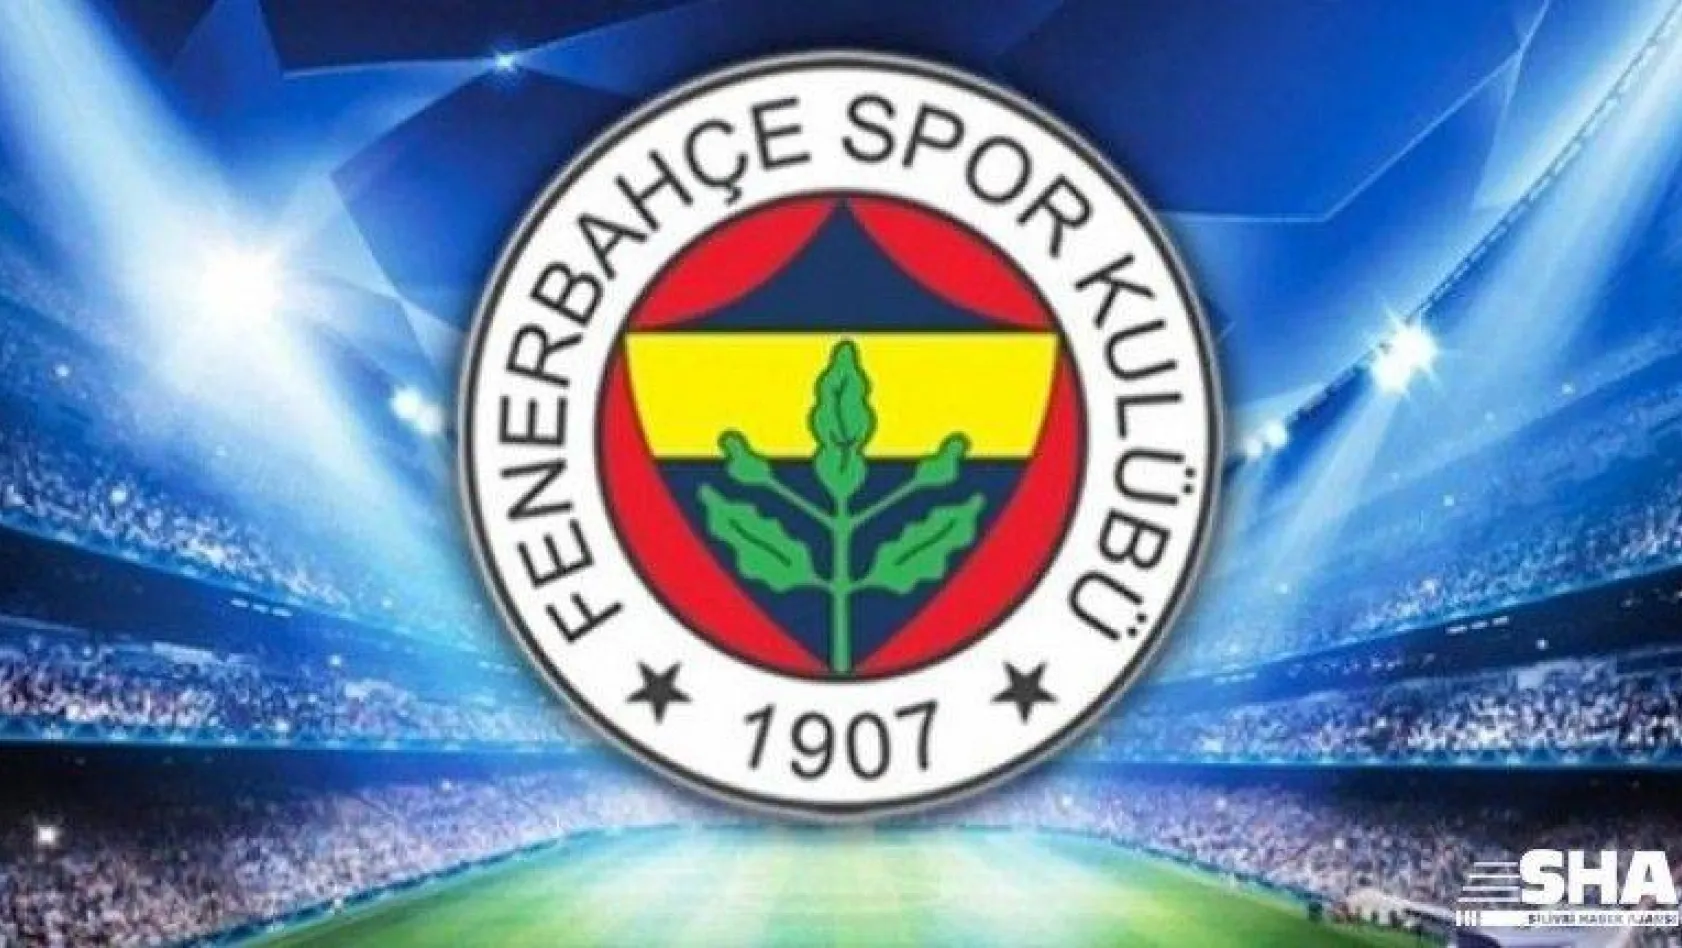 Fenerbahçe'de bir çalışan korona virüse yakalandı